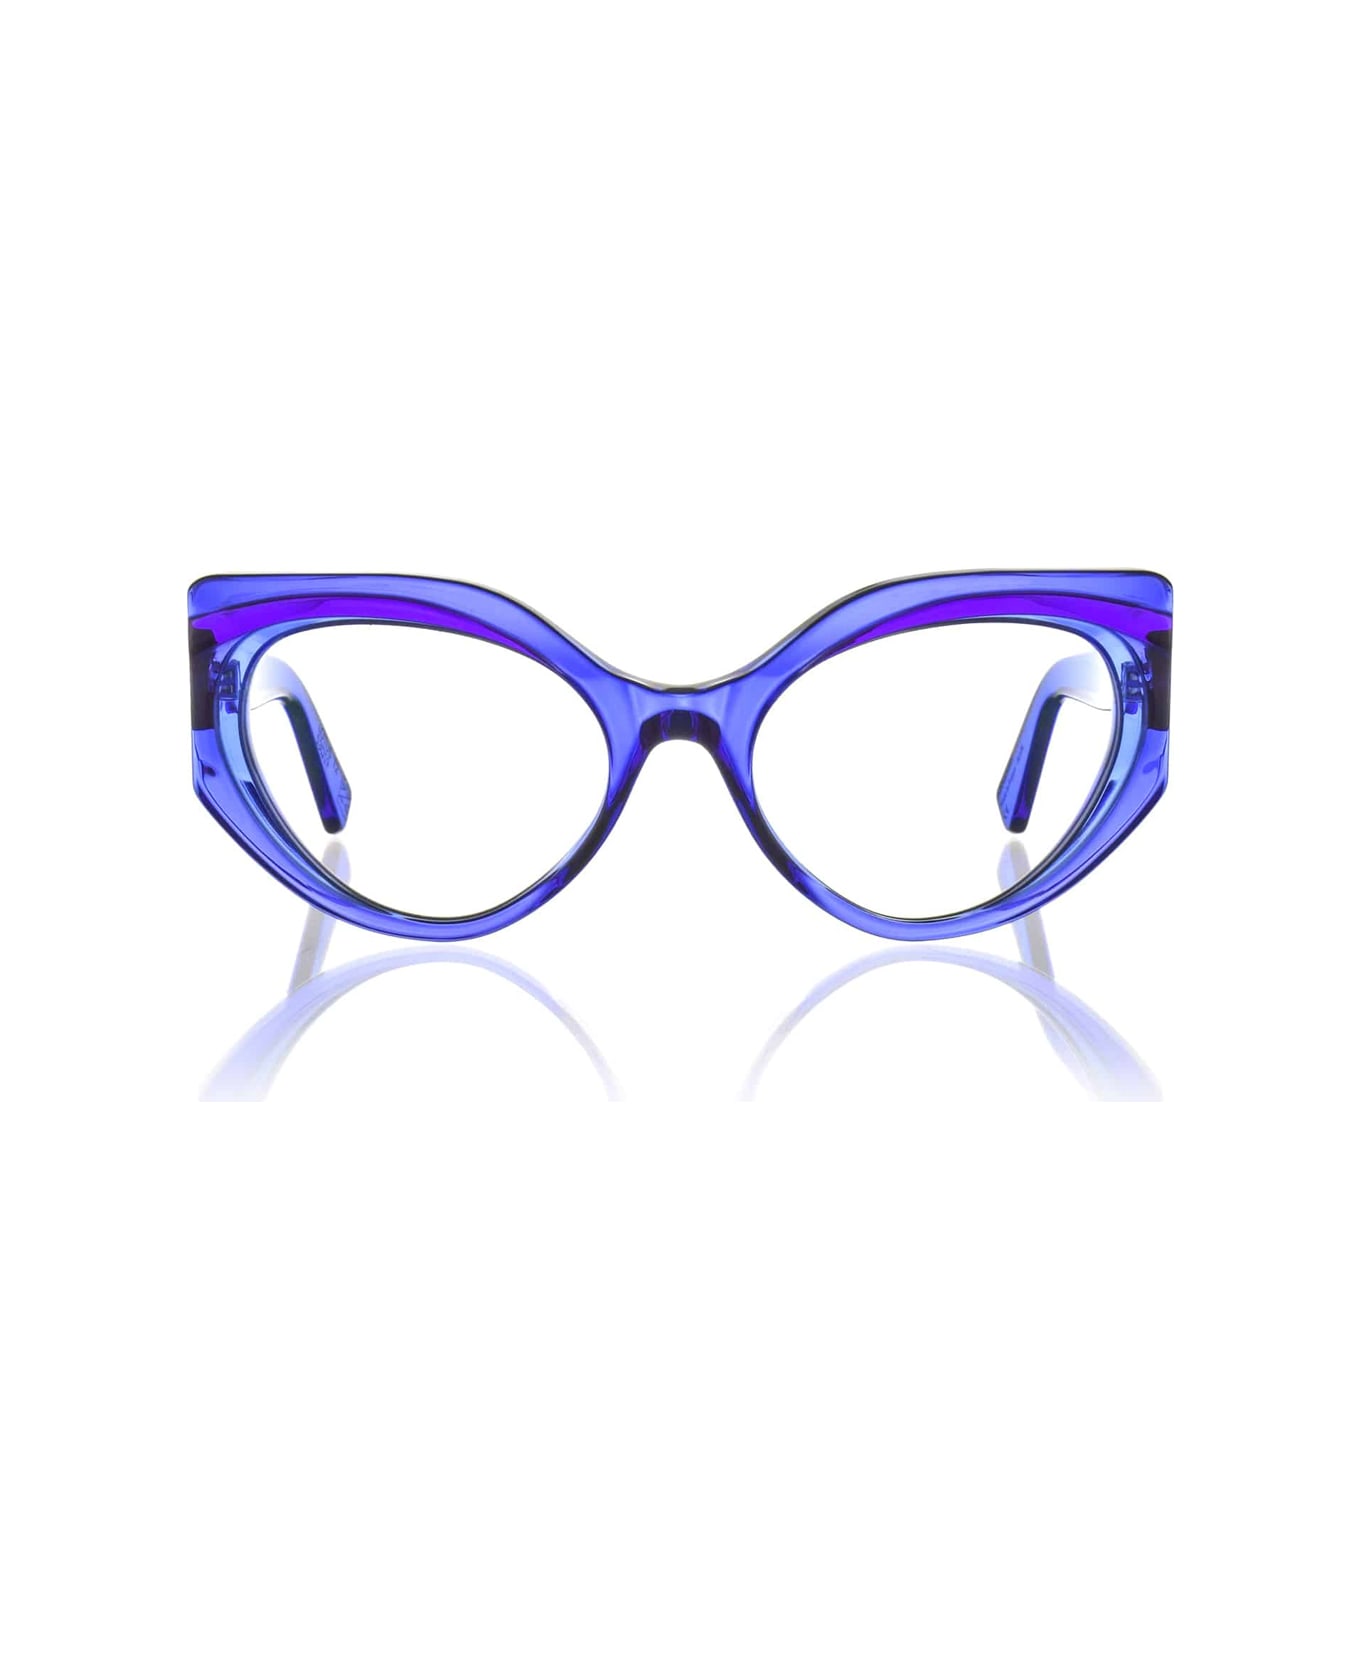 Kirk & Kirk Lotus T2 Blue Moon Glasses - Blu アイウェア